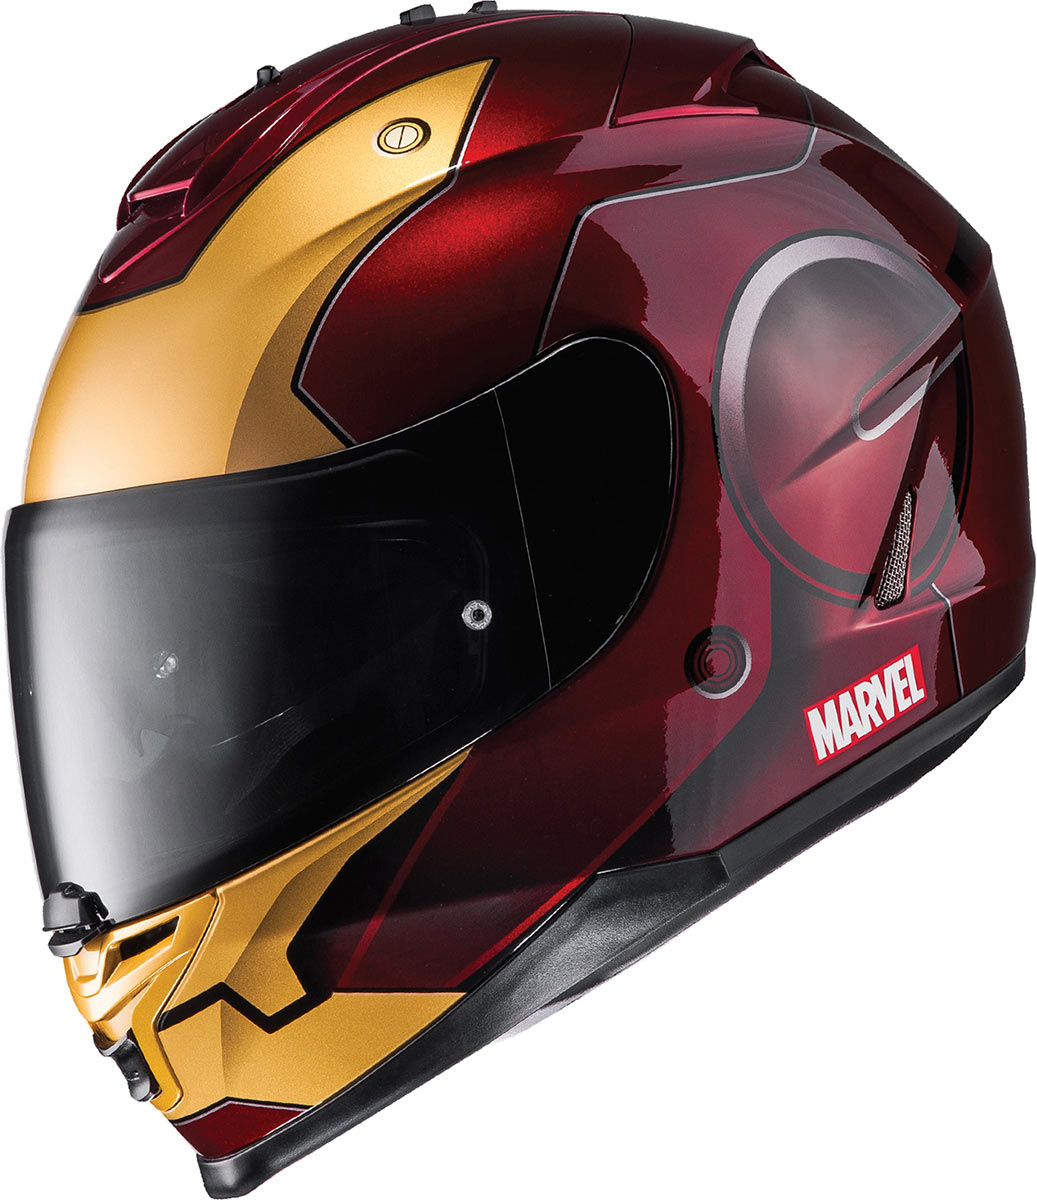 Ce casque HJC IS-17 profite de graphismes Iron Man sous licence Marvel